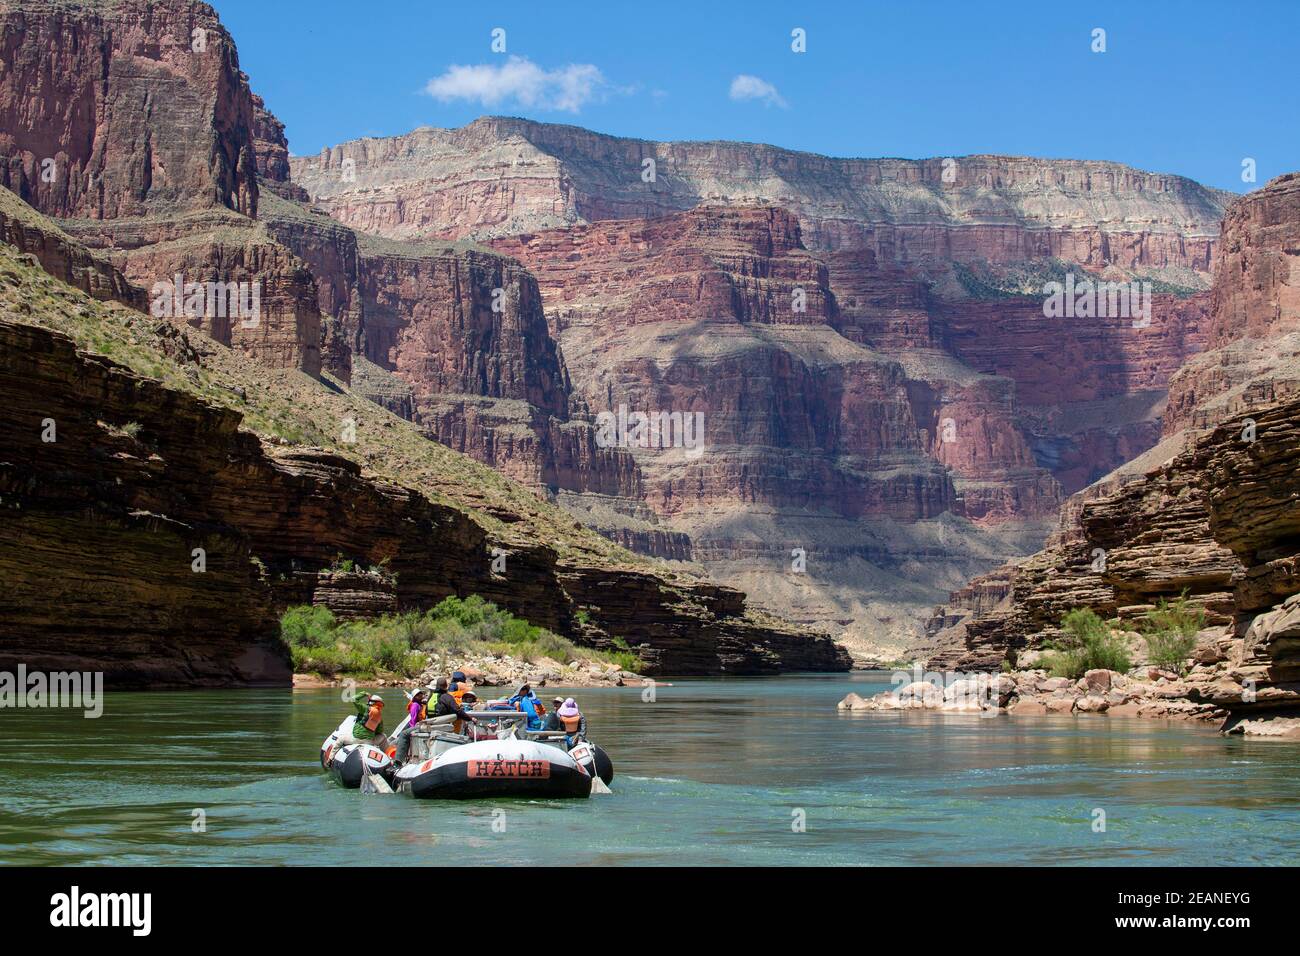 Flottant dans un radeau sur le fleuve Colorado, Parc national du Grand Canyon, site classé au patrimoine mondial de l'UNESCO, Arizona, États-Unis d'Amérique, Amérique du Nord Banque D'Images